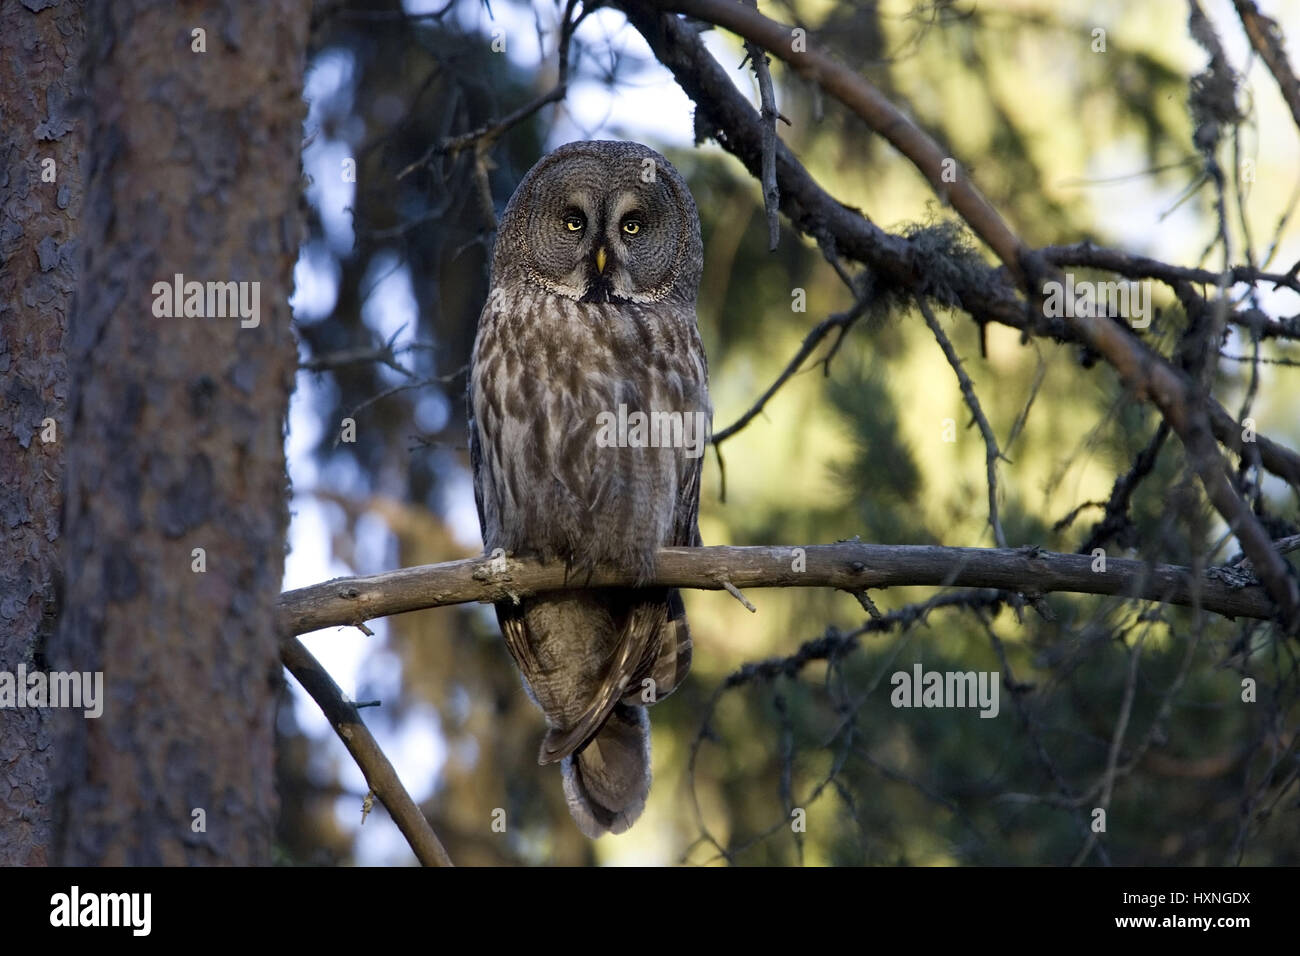 Old bird sits well in disguise in spruce. Sweden, Altvogel sitzt gut getarnt in Fichte. Schweden Stock Photo